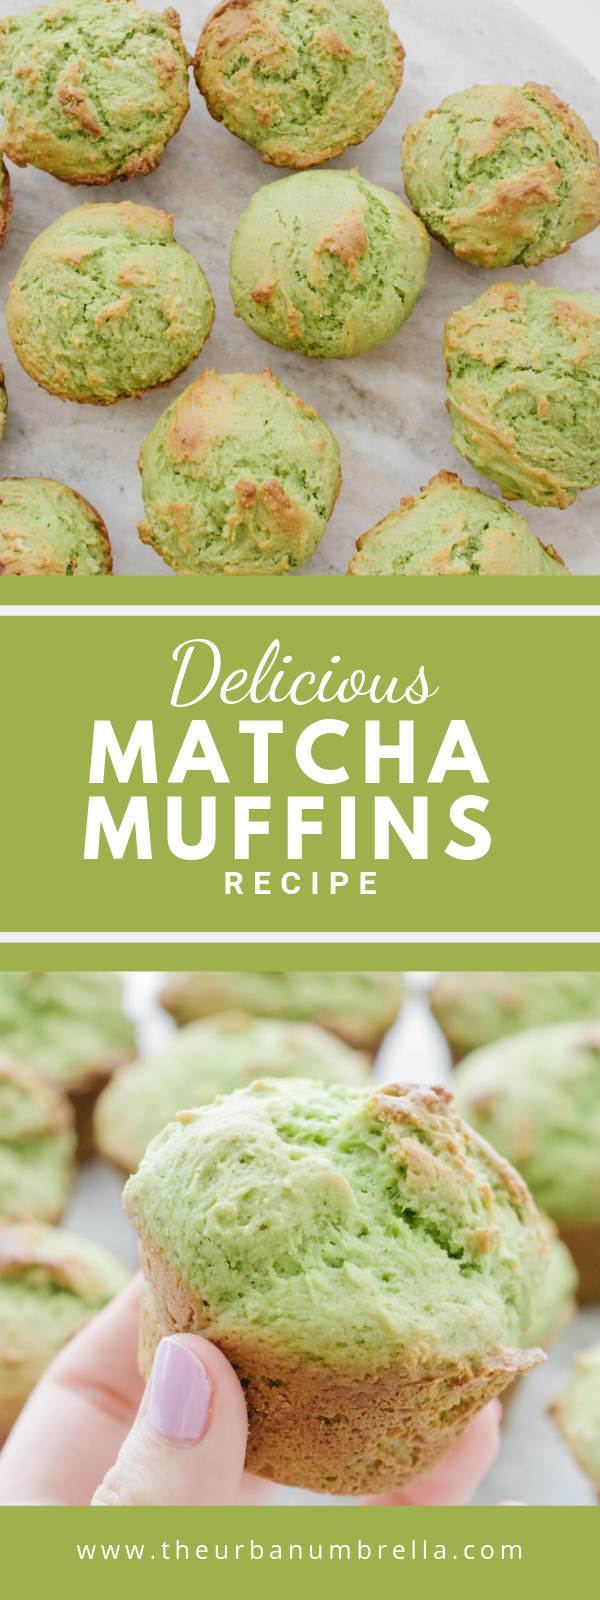 Matcha Muffins